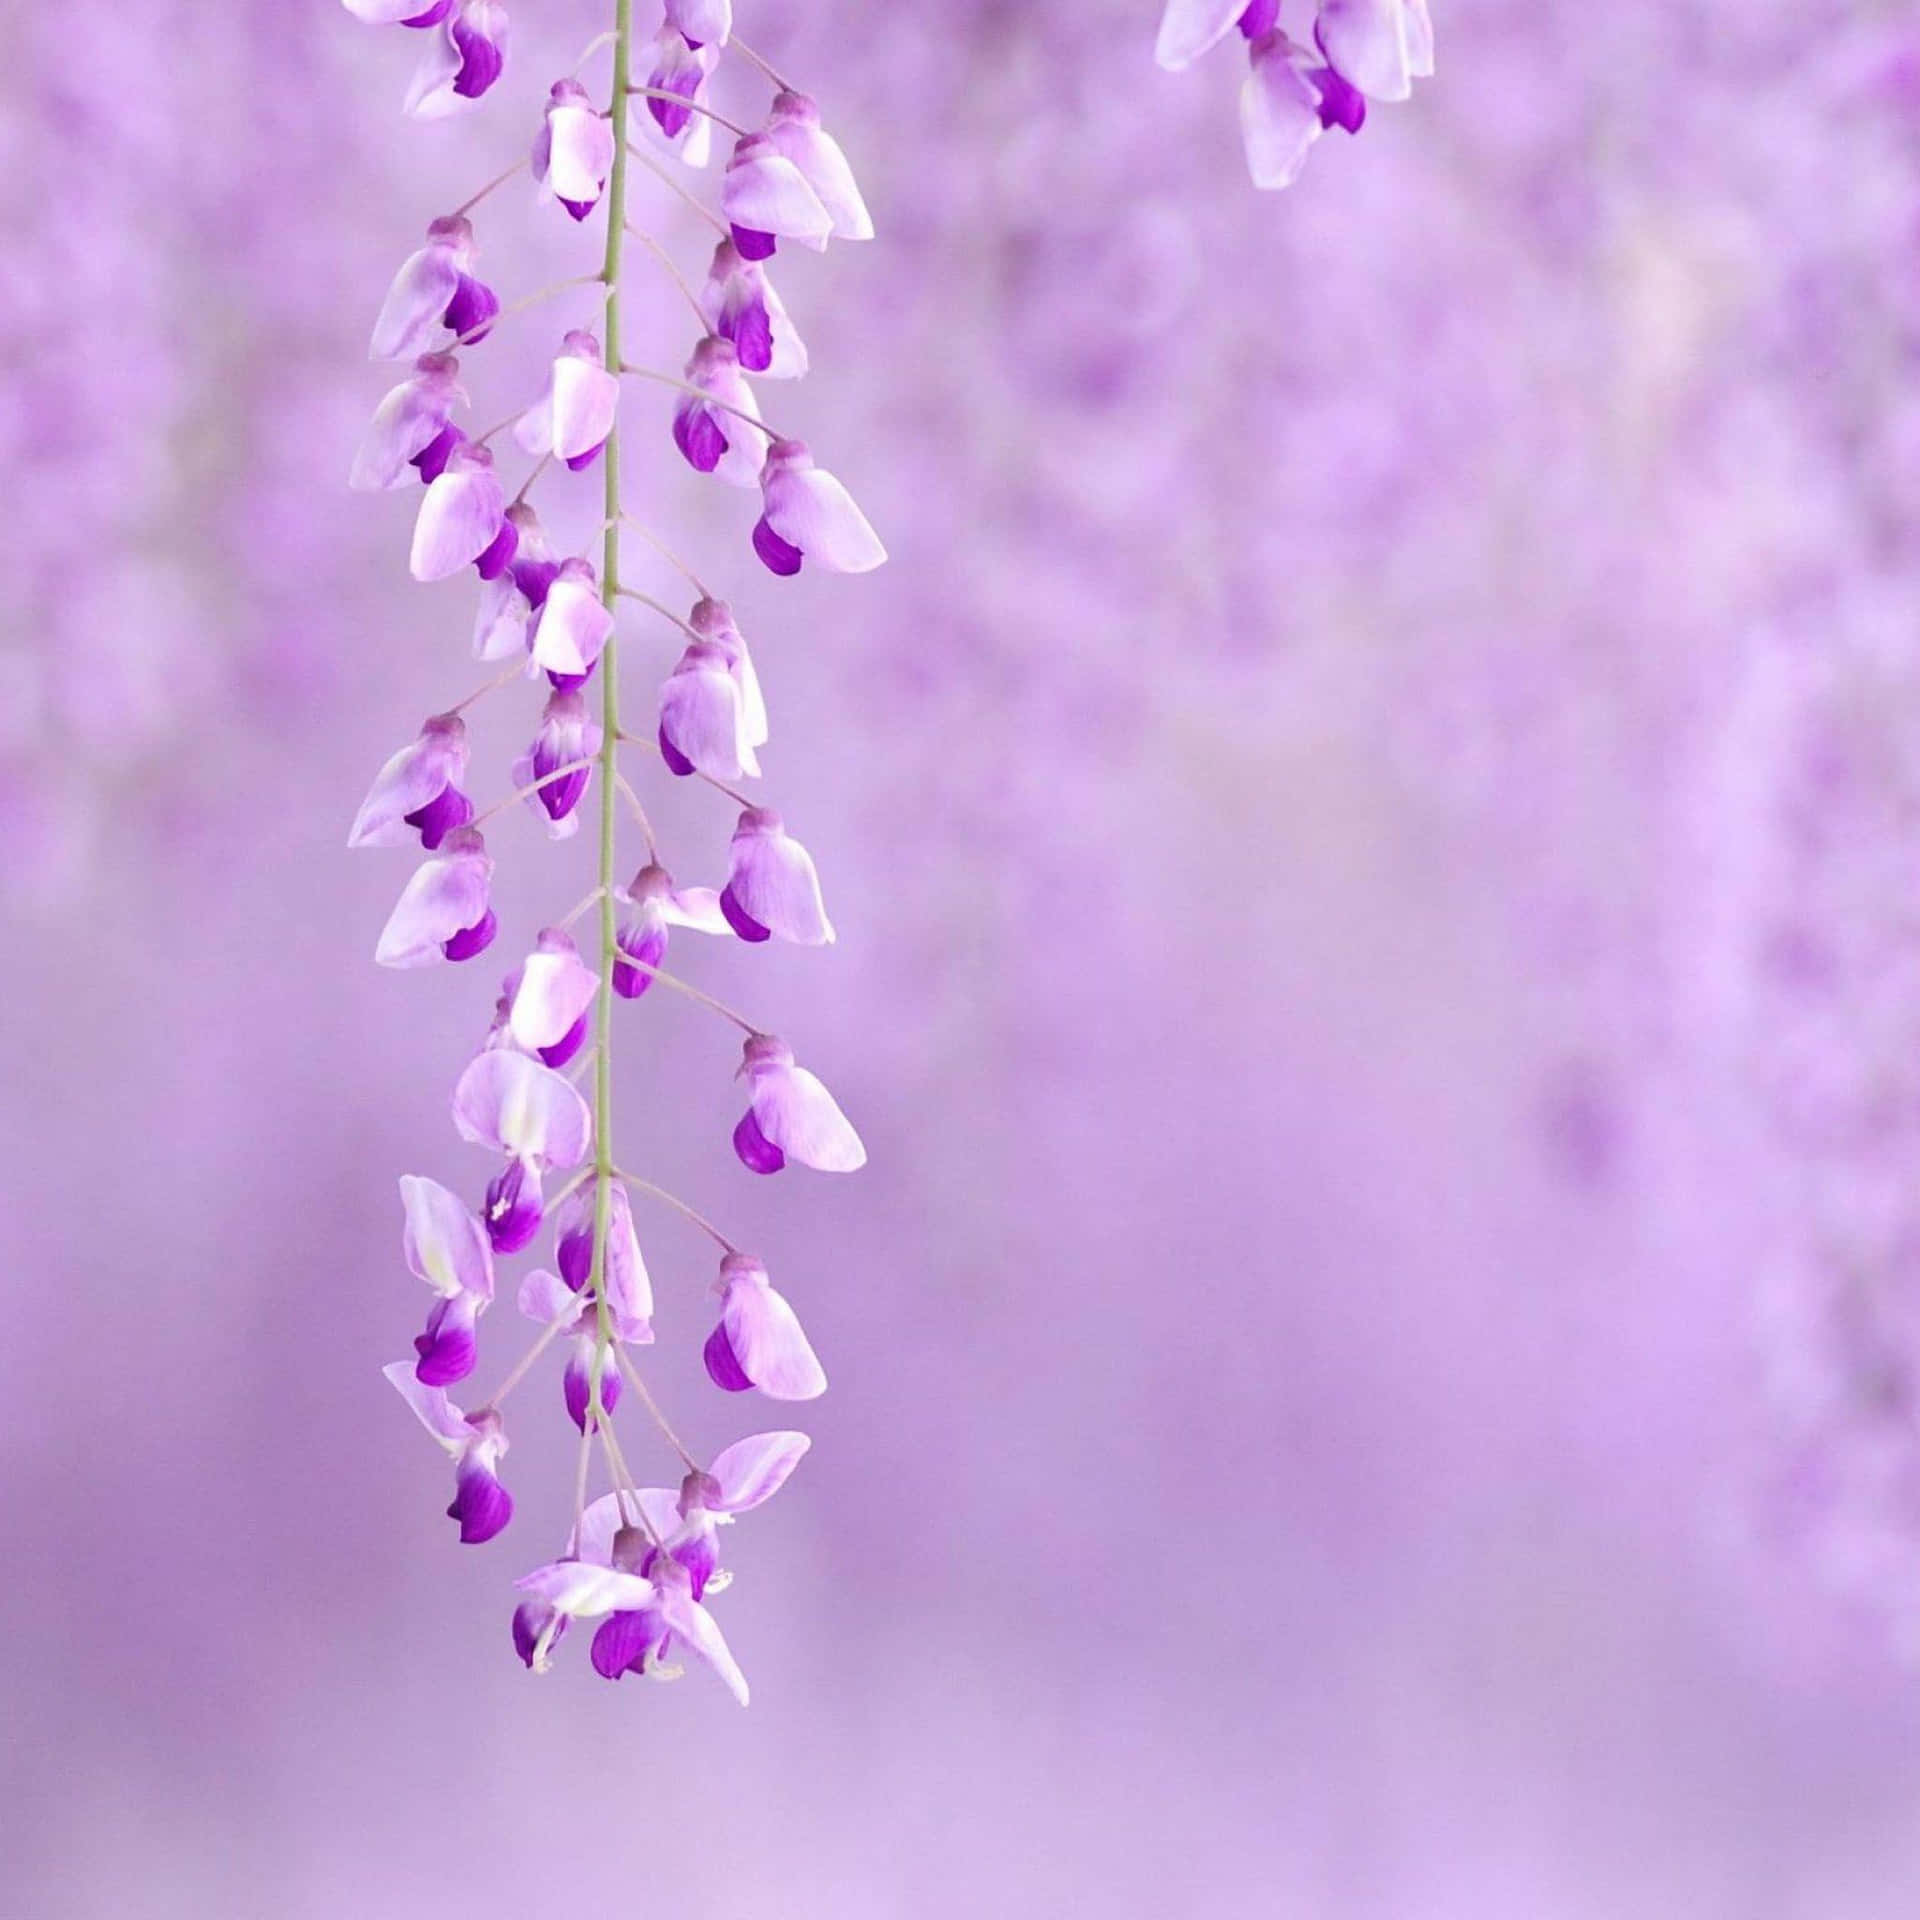 Et enkelt, men imponerende billede af en smuk lilla blomst.